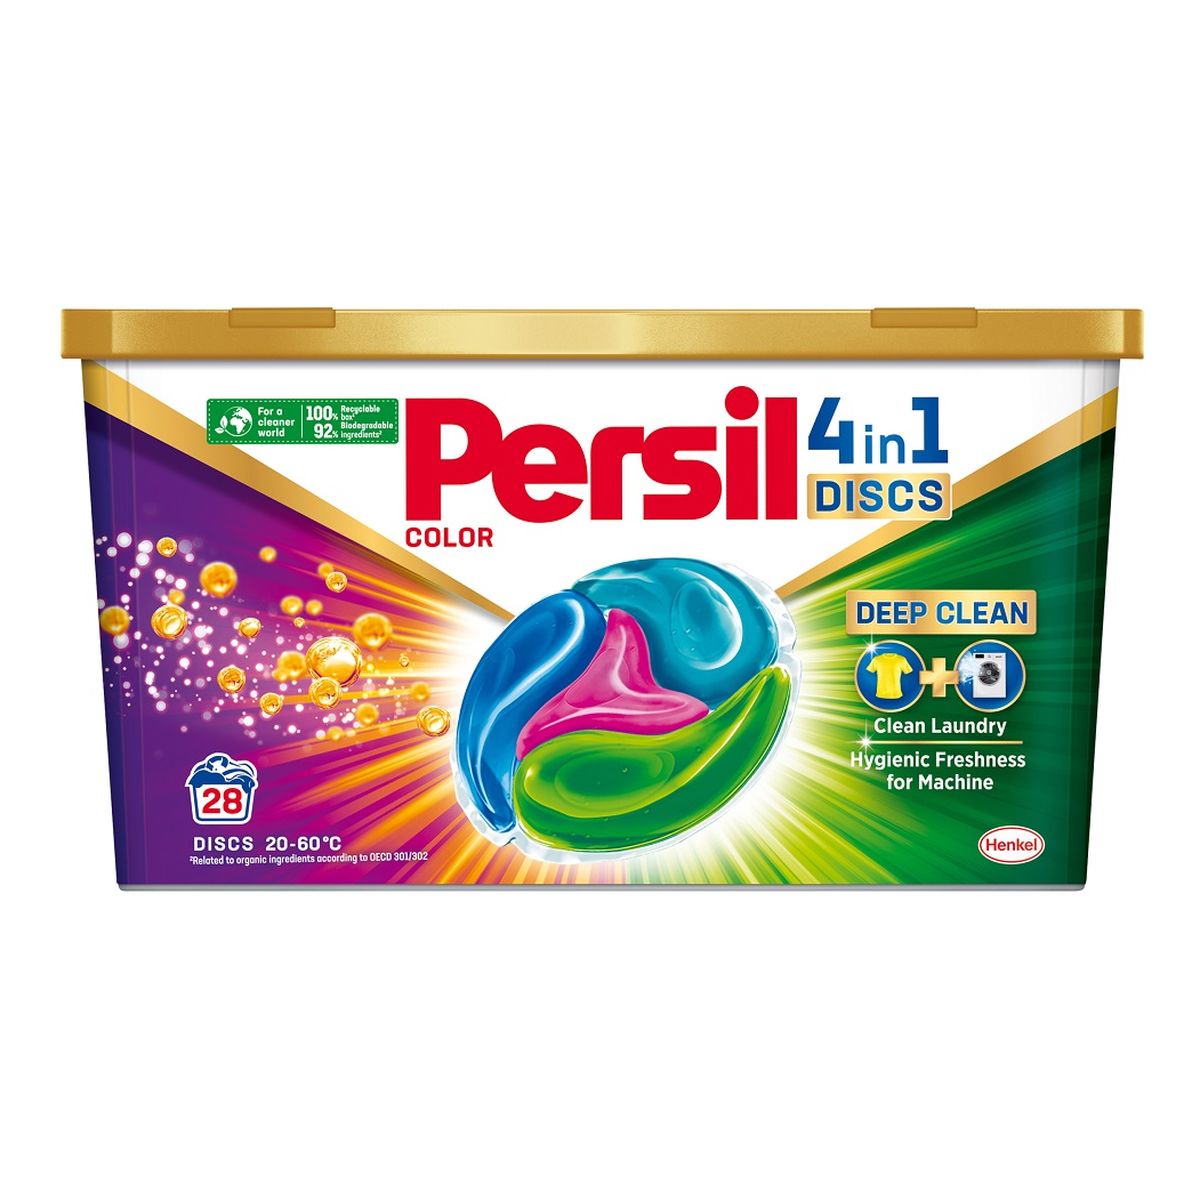 Persil Discs 4in1 color kapsułki do prania kolorów 28szt.